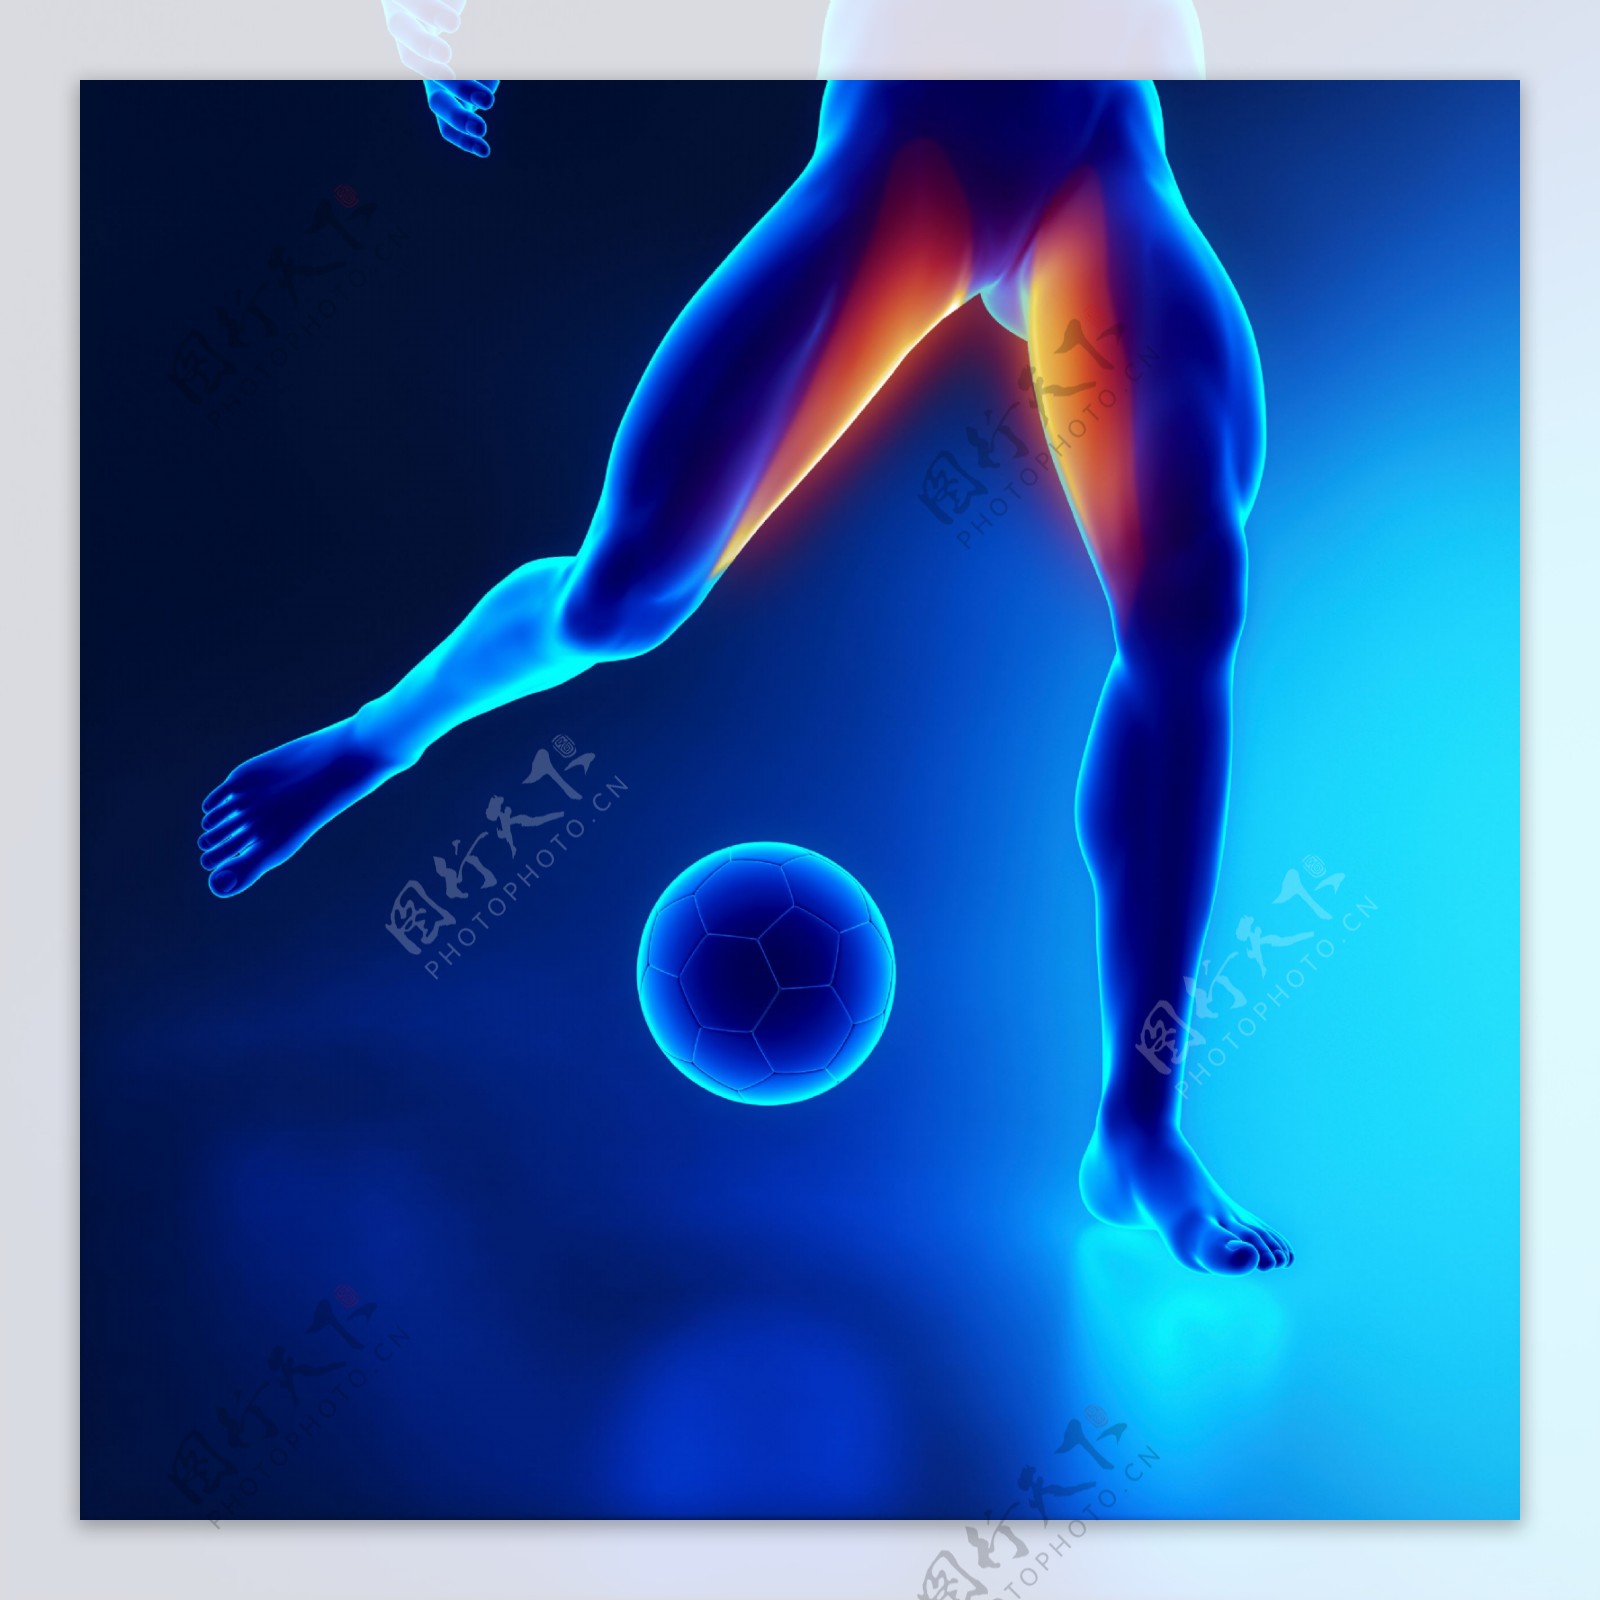 踢足球的男性腿部肌肉图片